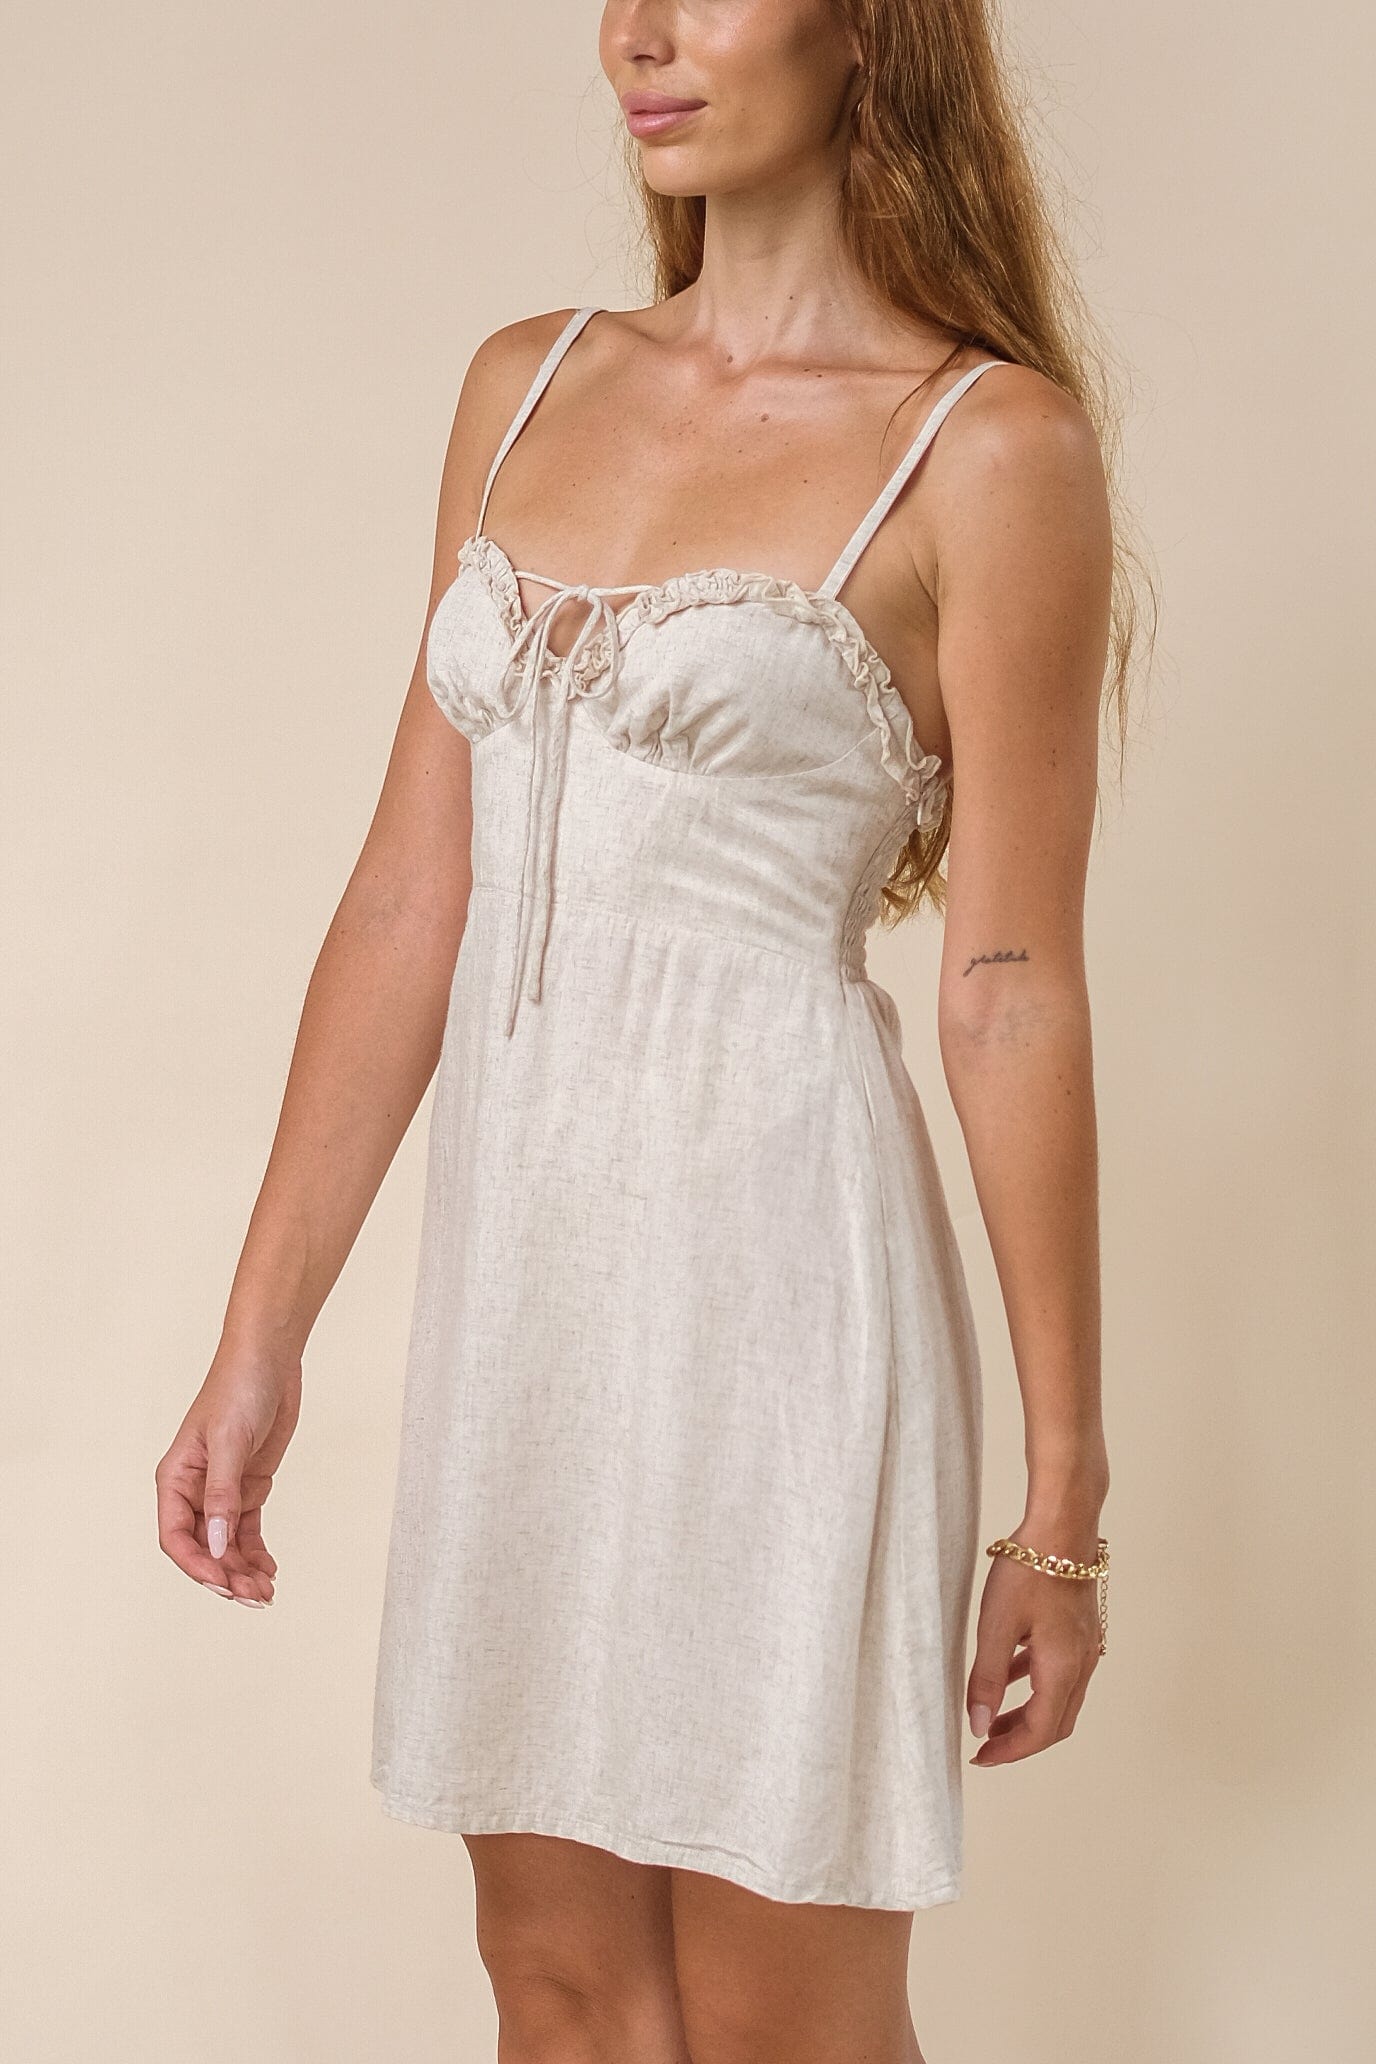 Copy of Brea Dress - Dress - LOST IN PARADISE